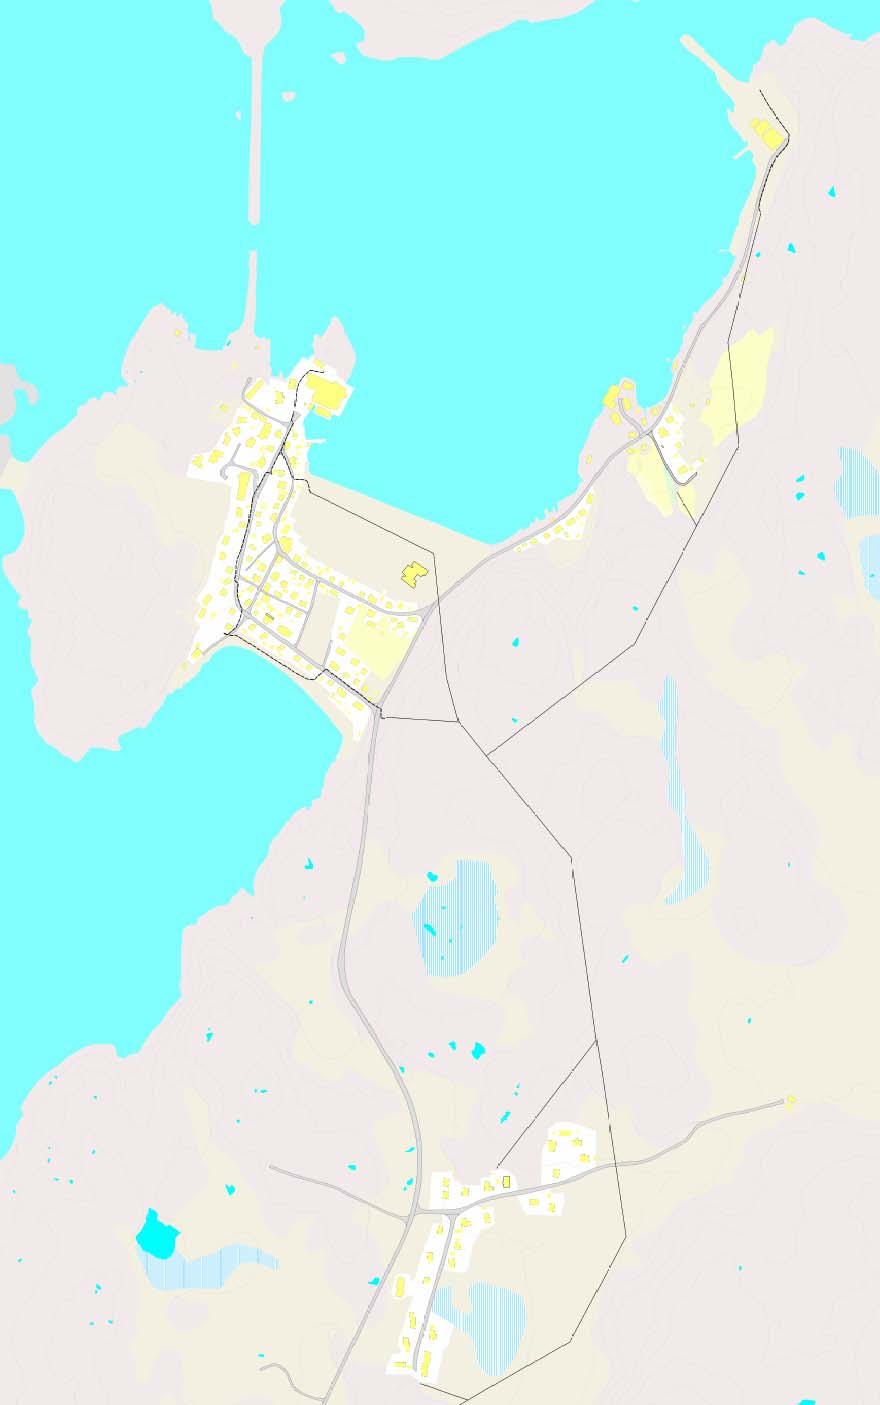 Lokal energiutredning Sør-Varanger